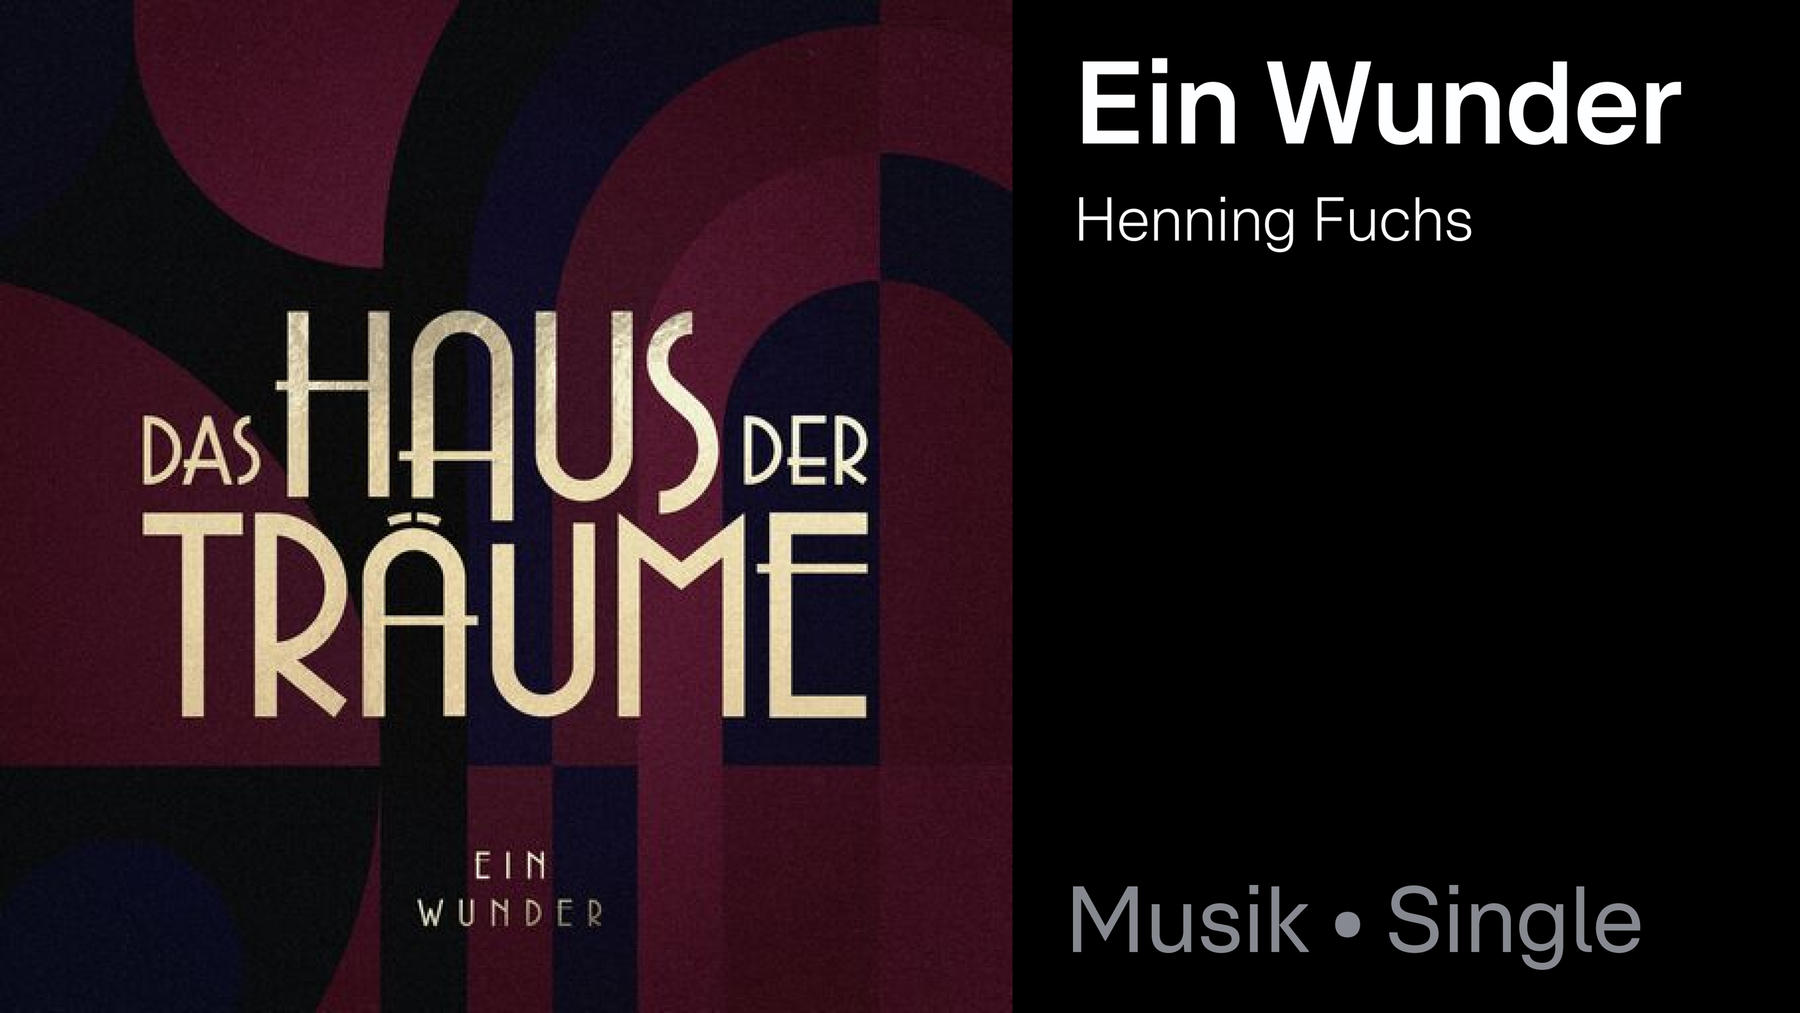 Single: Ein Wunder - Henning Fuchs